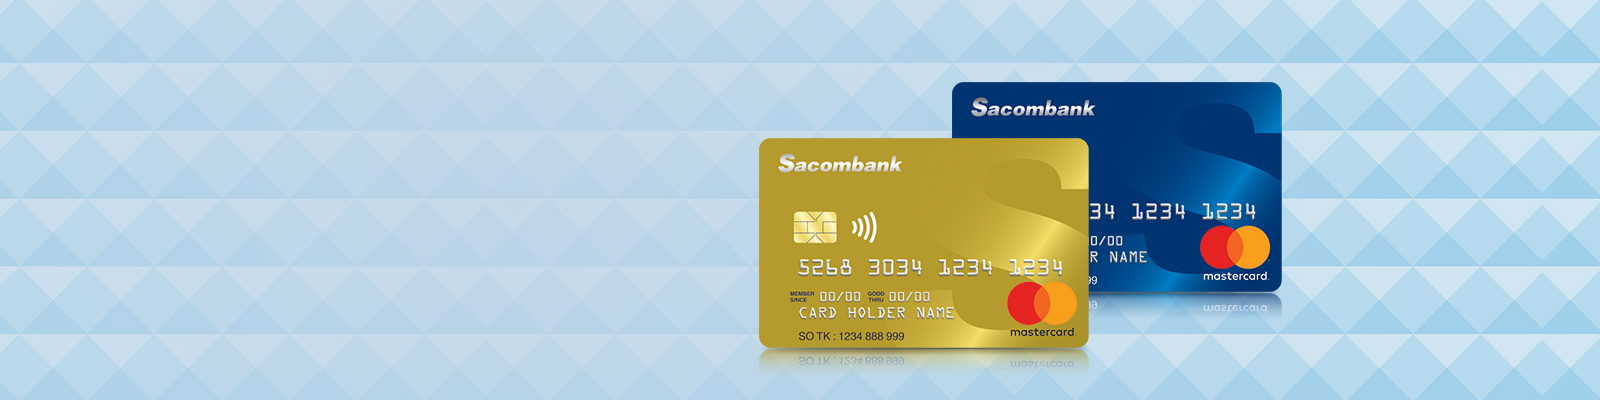 Thẻ tín dụng quốc tế Sacombank Mastercard